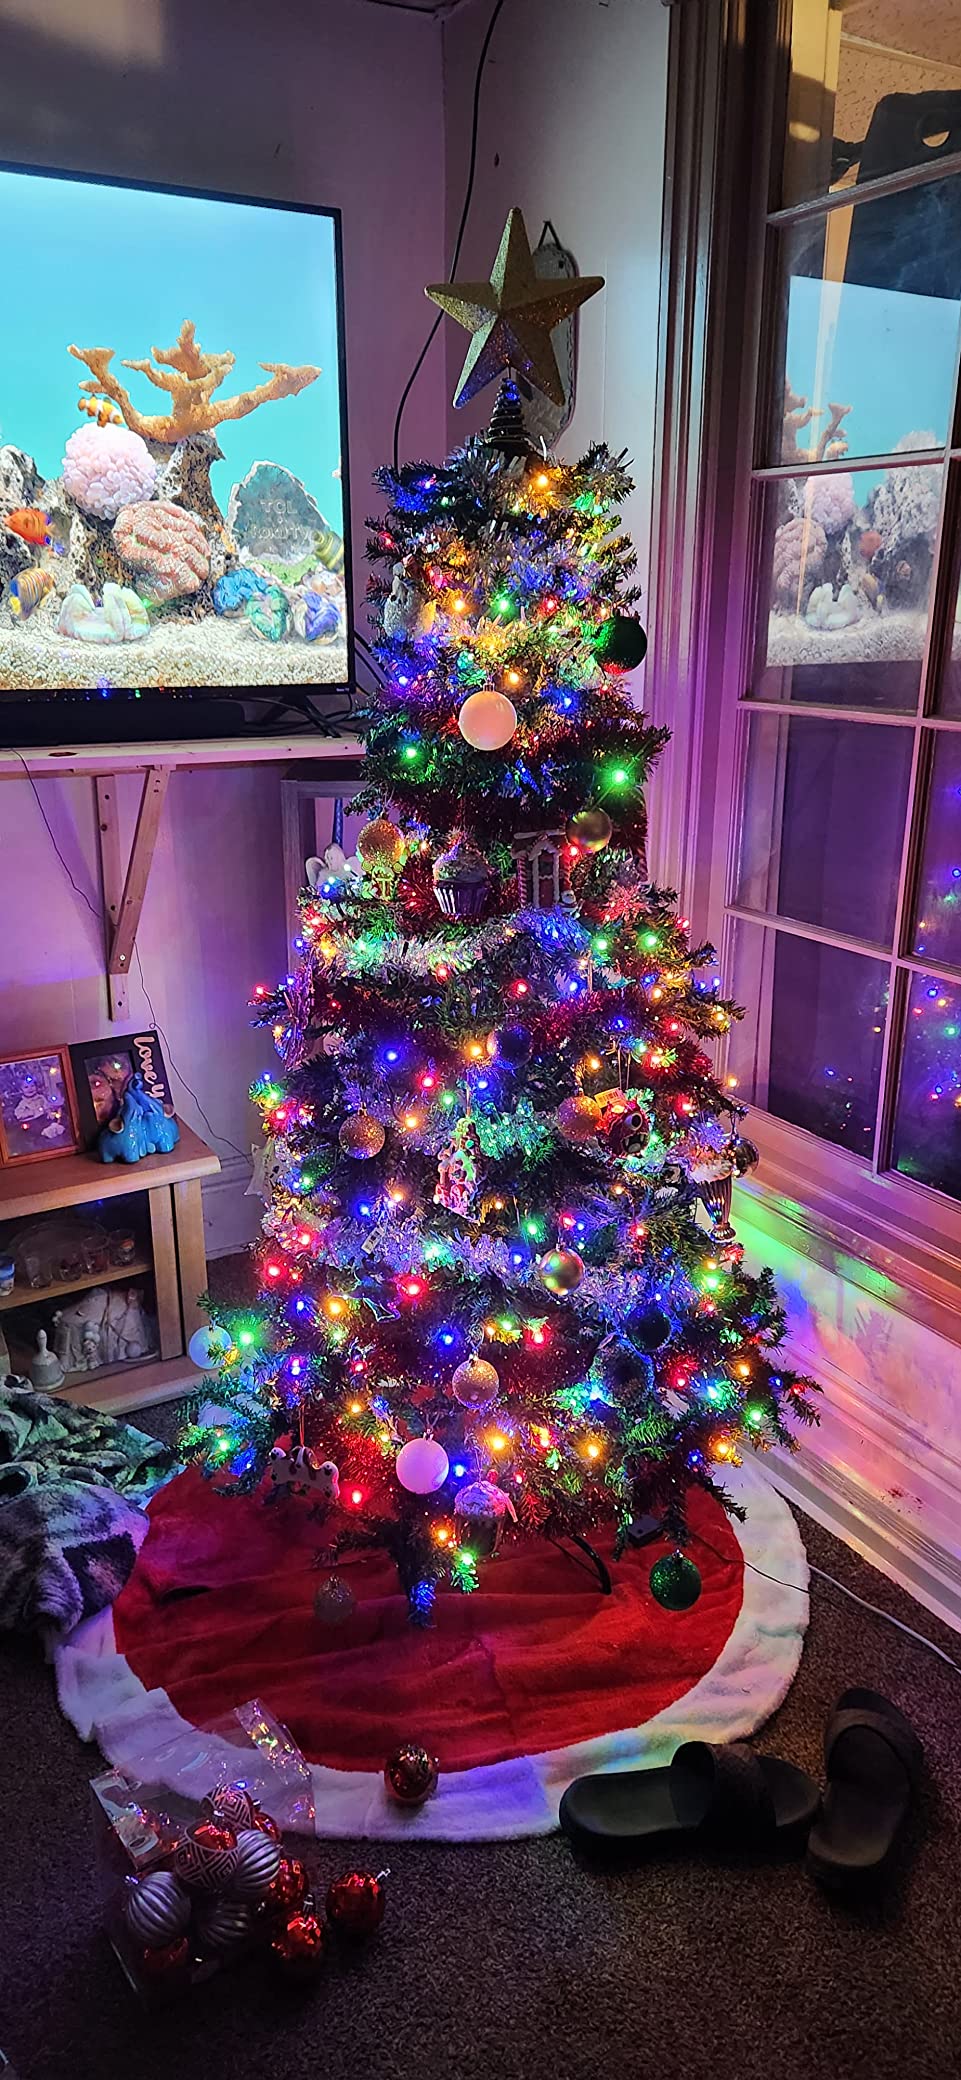 Nice tree/lights